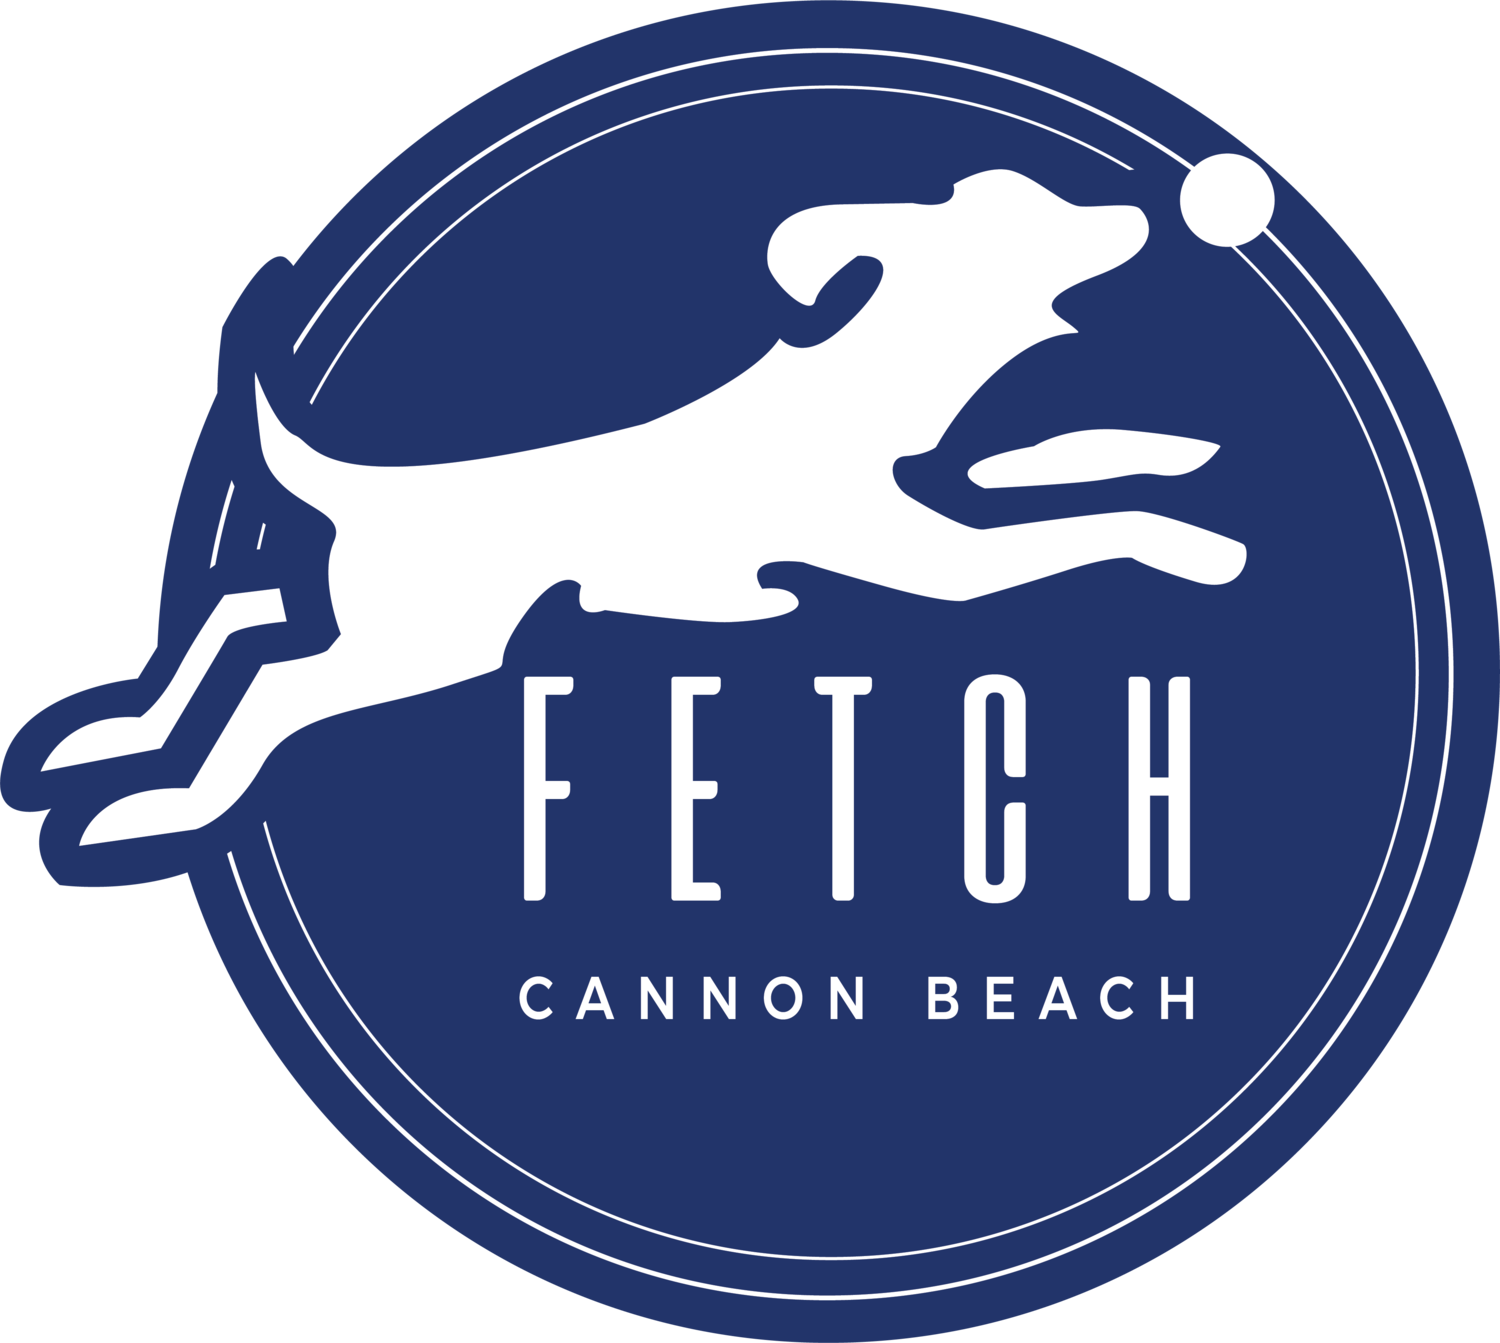 Fetch Cannon Beach